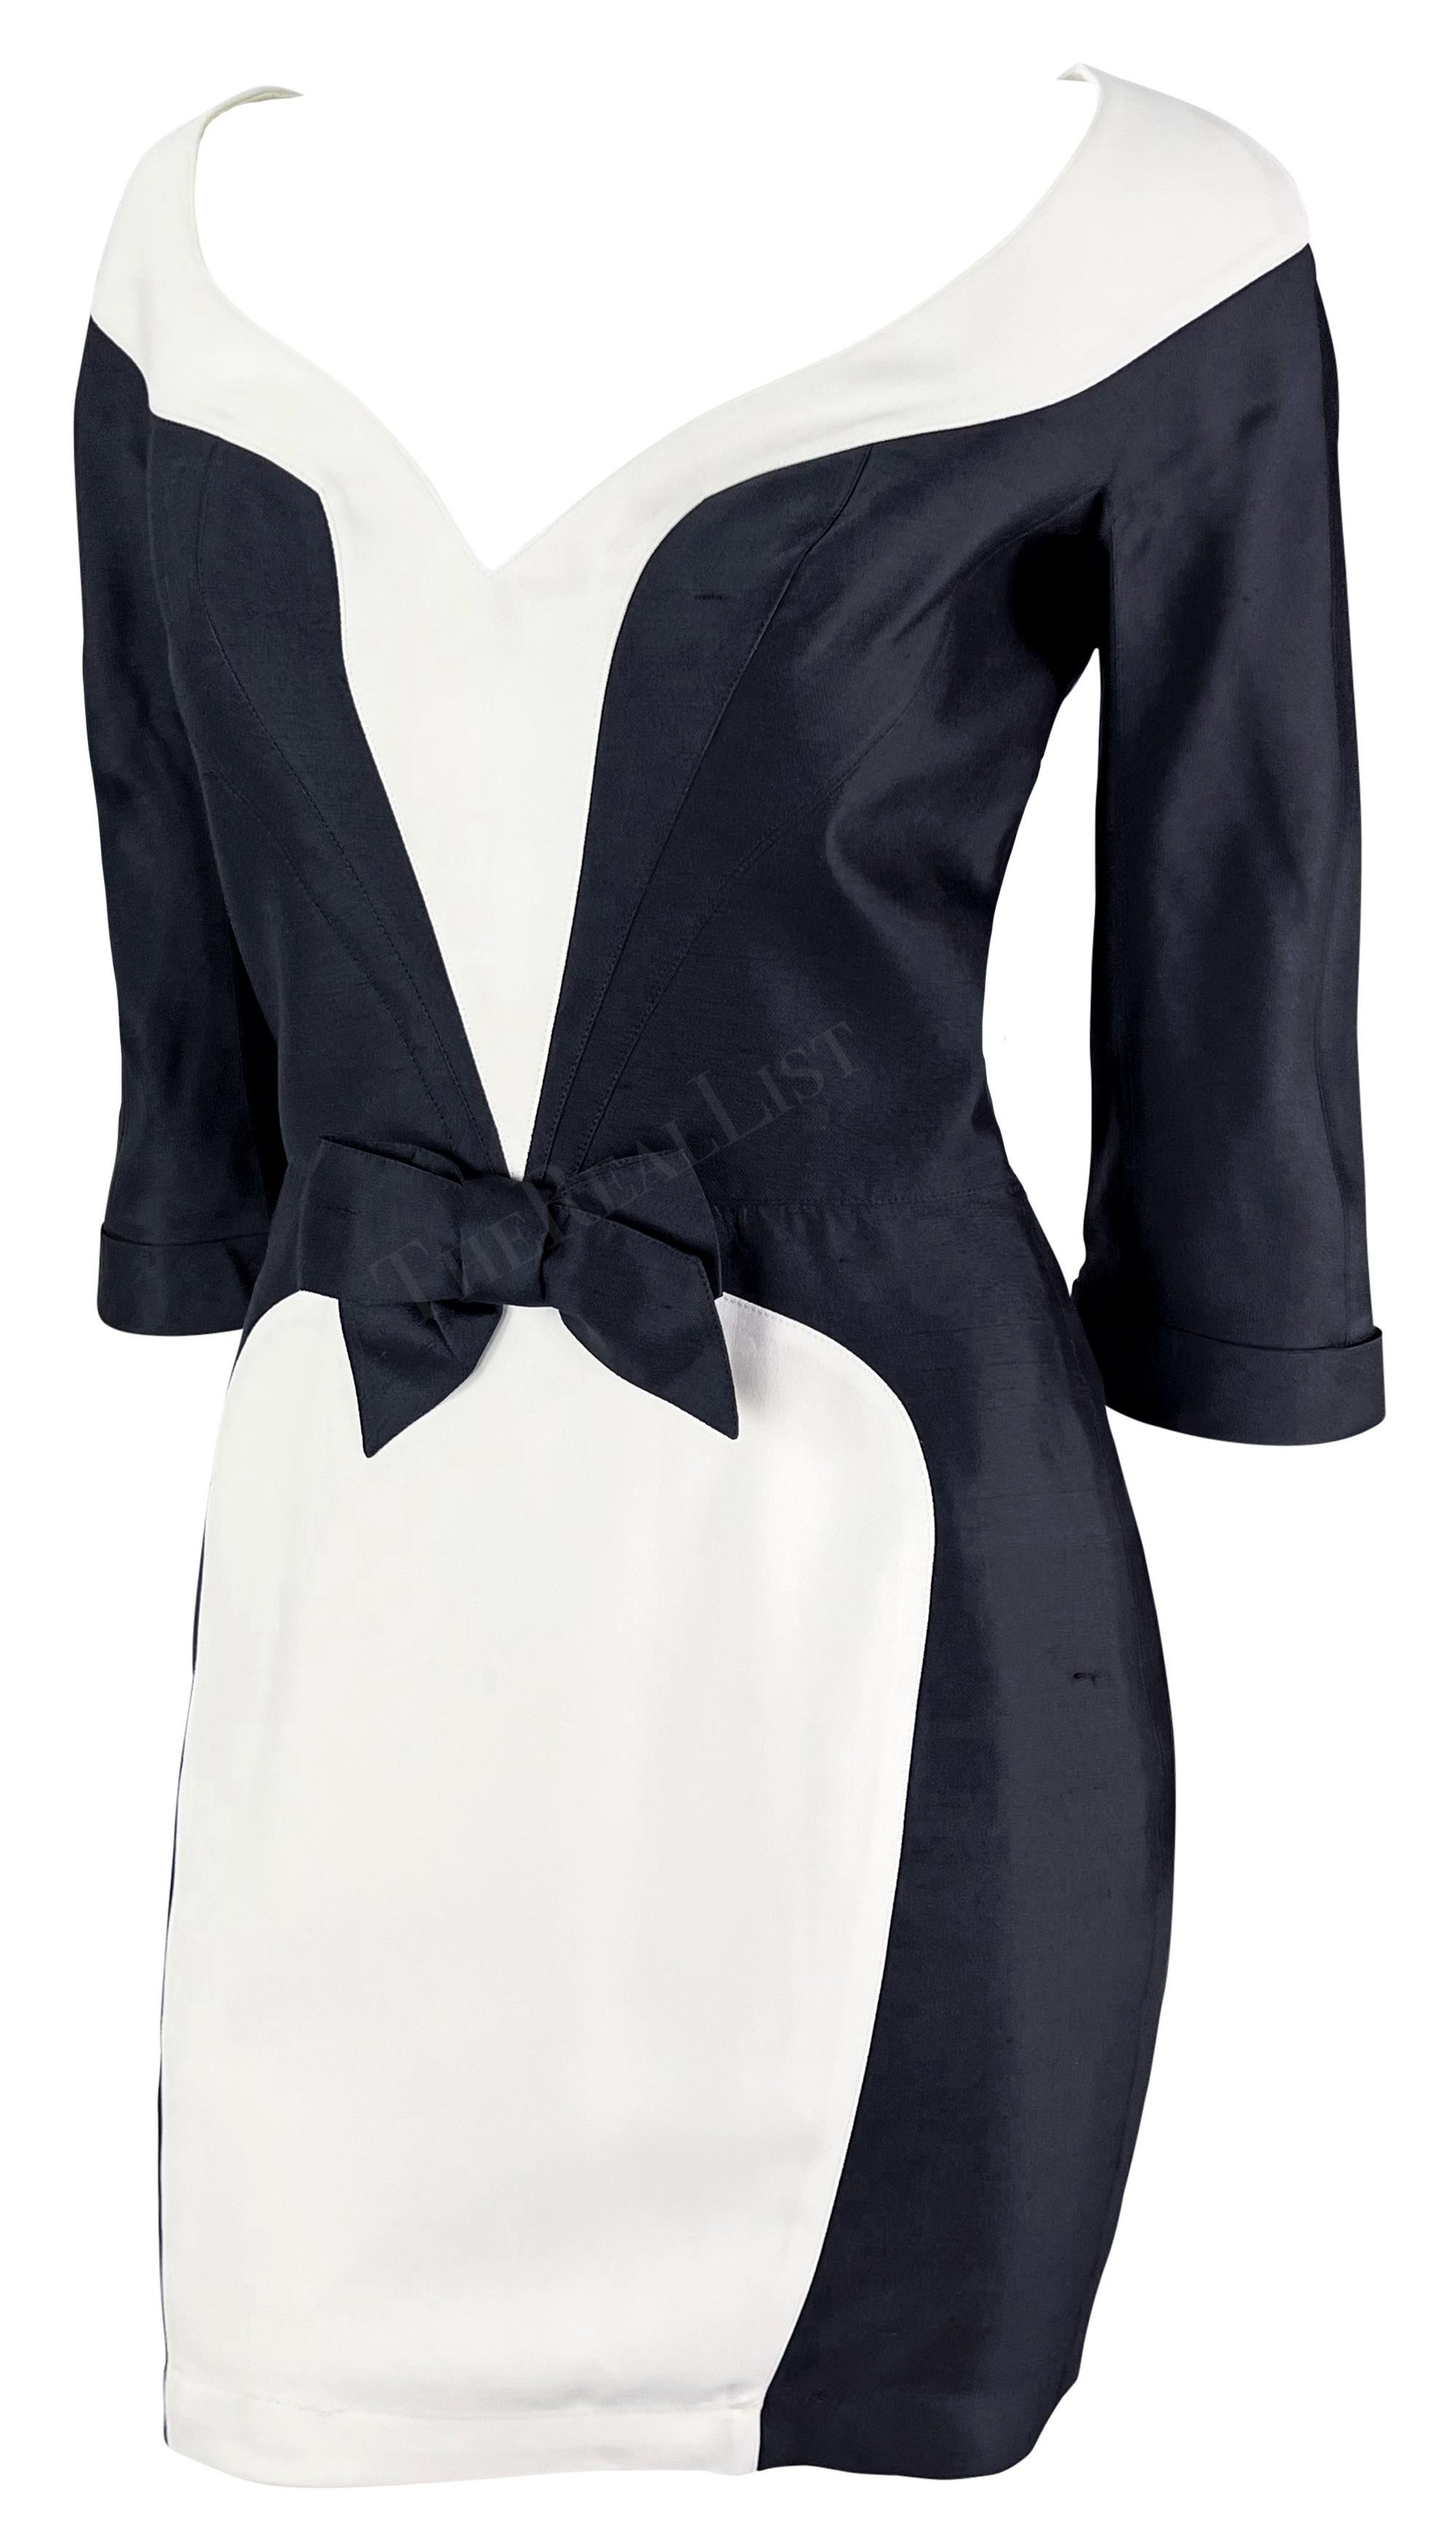 Sie präsentiert ein schickes schwarz-weißes Minikleid von Thierry Mugler. Dieses Kleid aus der Mitte der 1990er Jahre ist in Schwarz und Weiß gehalten. Das Kleid hat einen V-Ausschnitt, der sich spielerisch um die Brust legt, angeschnittene Ärmel